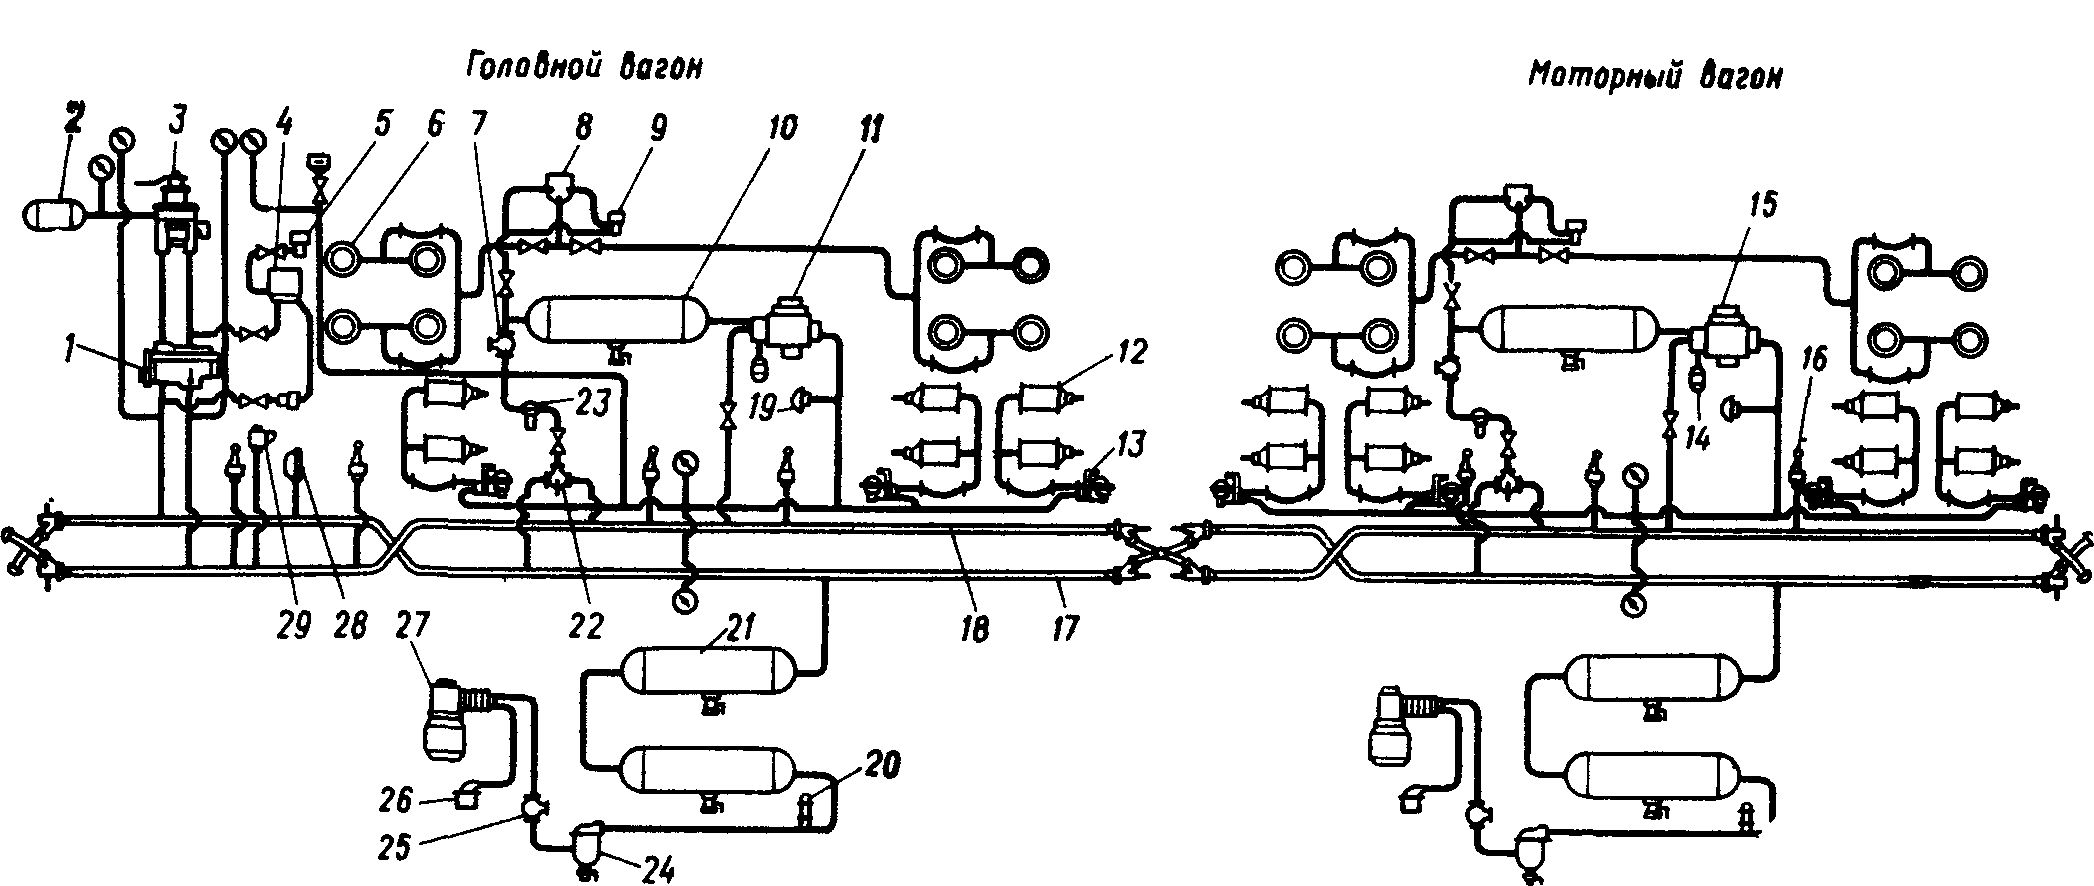 Схема тормозного оборудования электропоезда ЭР200